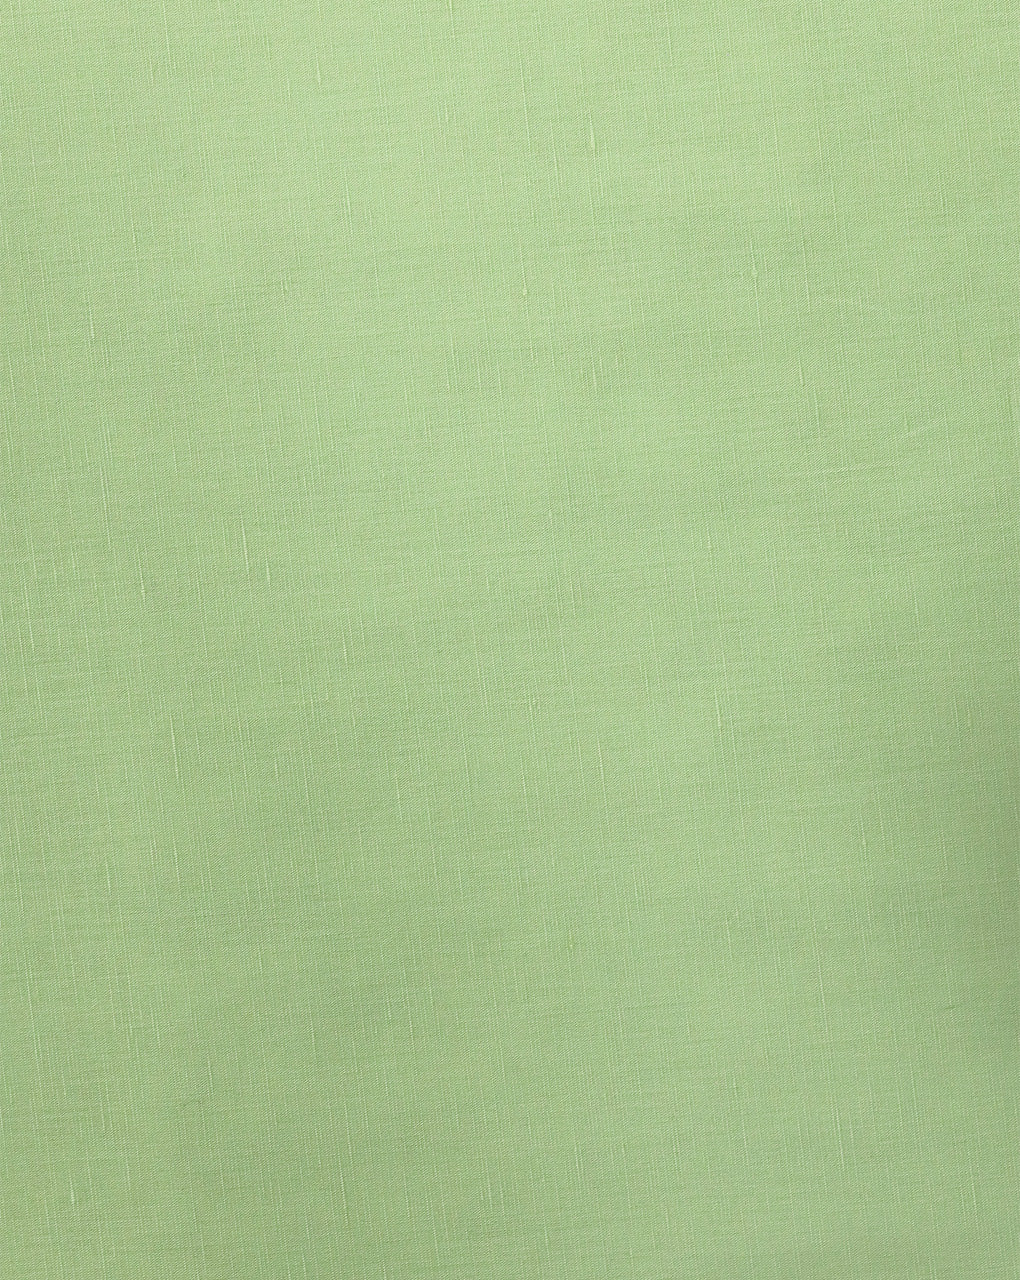 PISTA GREEN PLAIN COTTON LINEN SHIRTING FABRIC